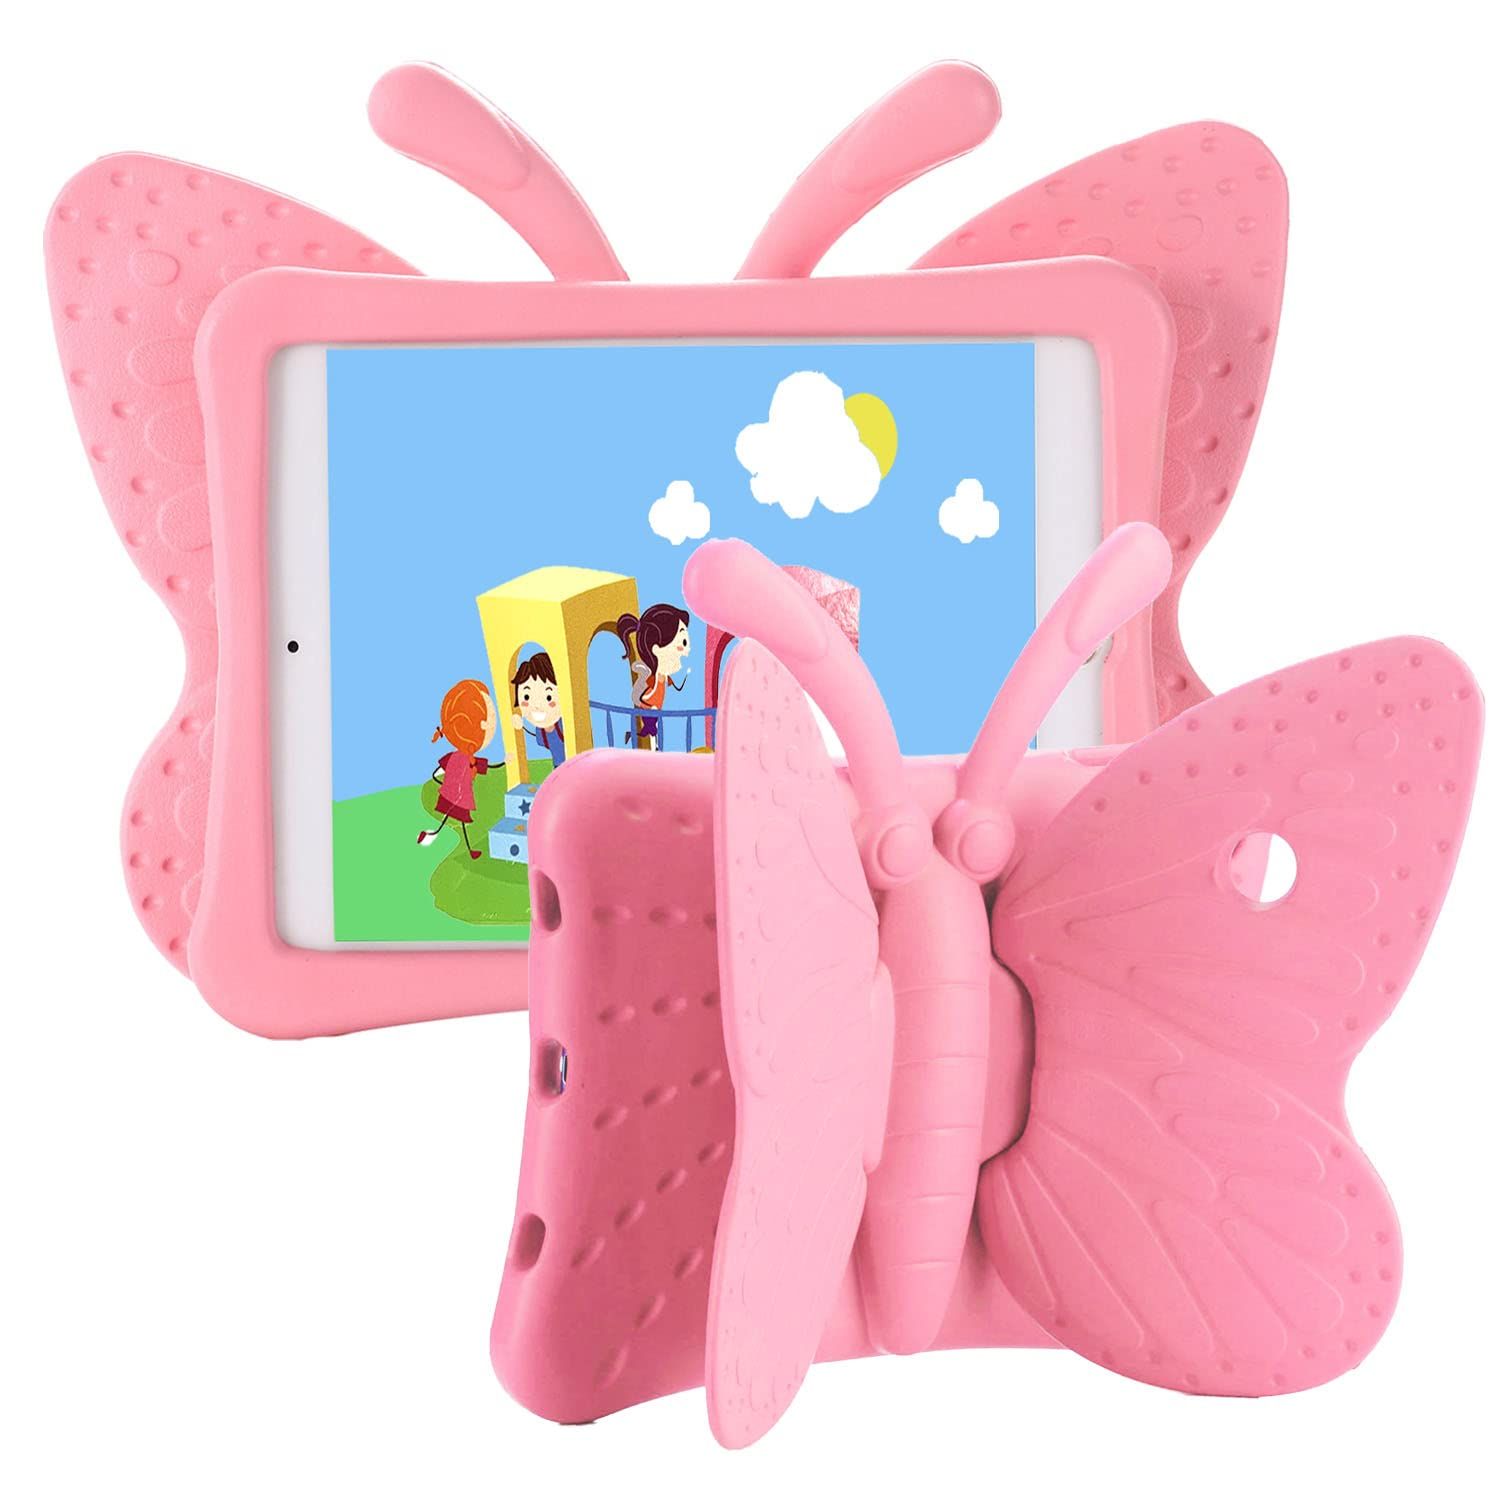 iPad case for Kids, Feitenn 3D Cartoon Butterfly Non-Toxic EVA Light Weight Kid Proof Shockproof ... | Amazon (US)